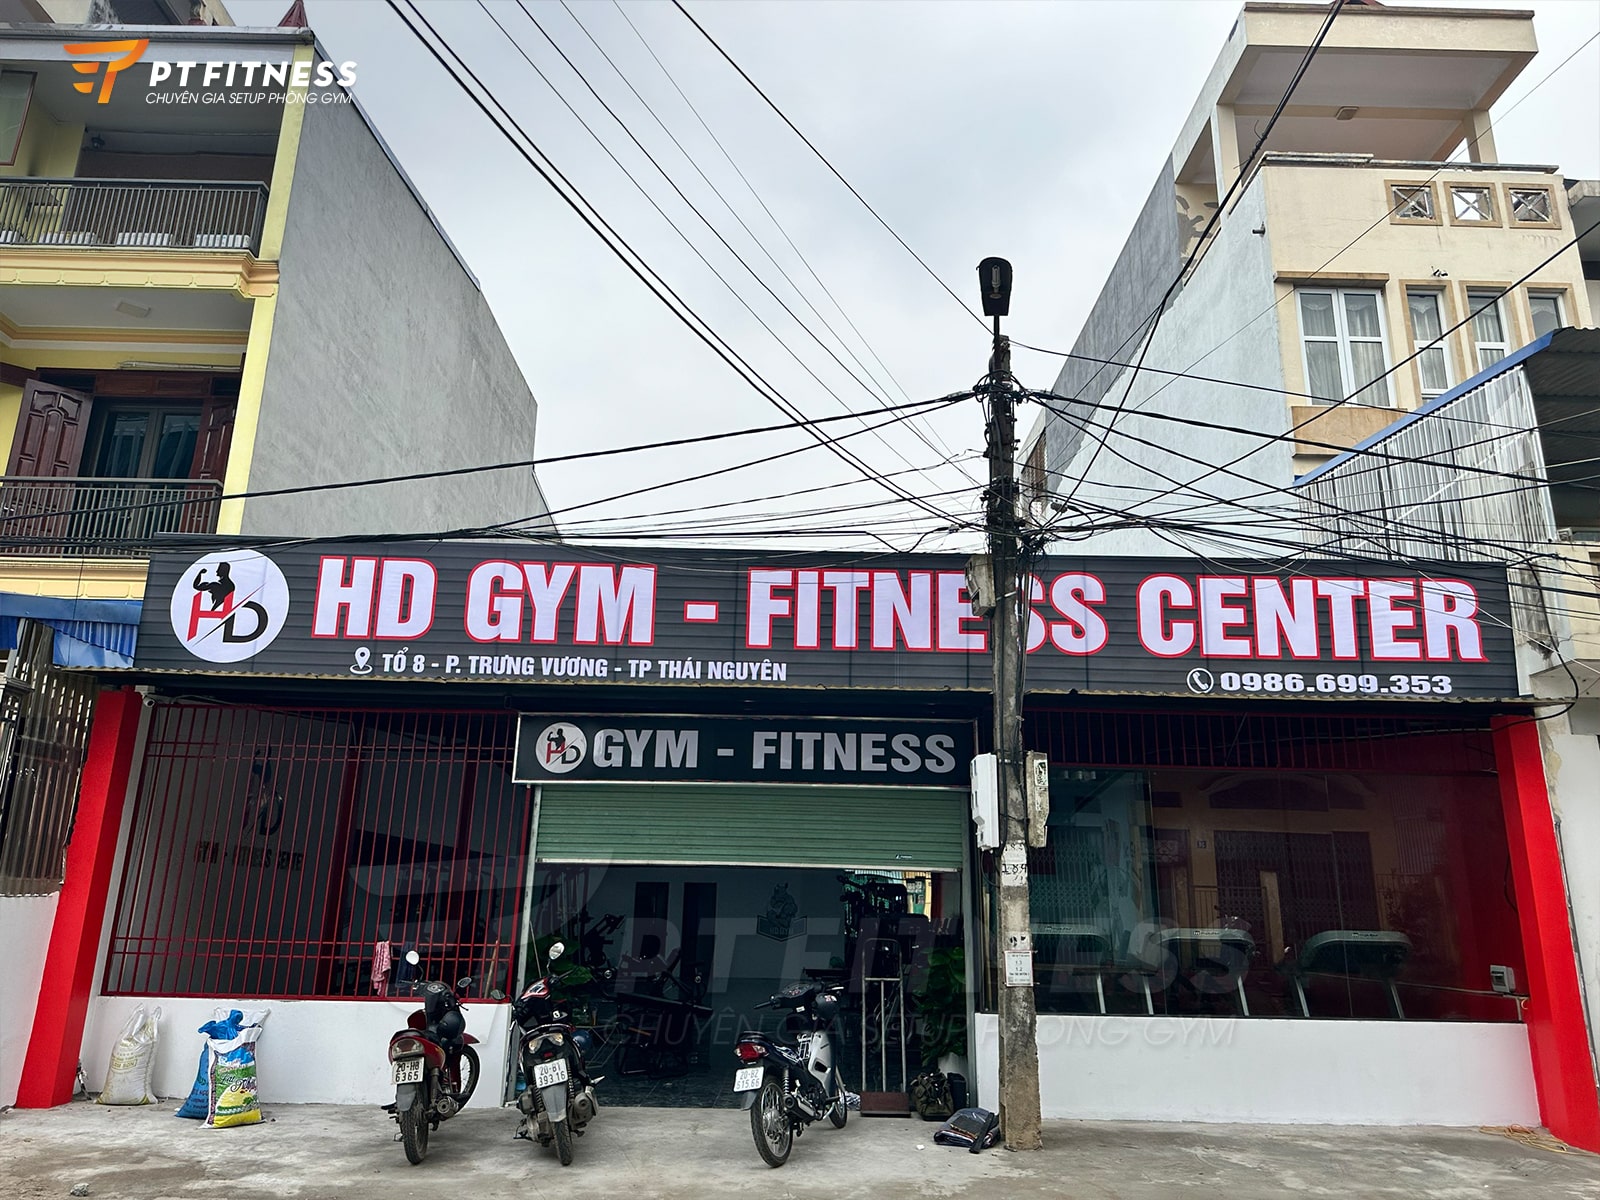 Phòng tập HD Gym - Fitness Center tại Thái Nguyên